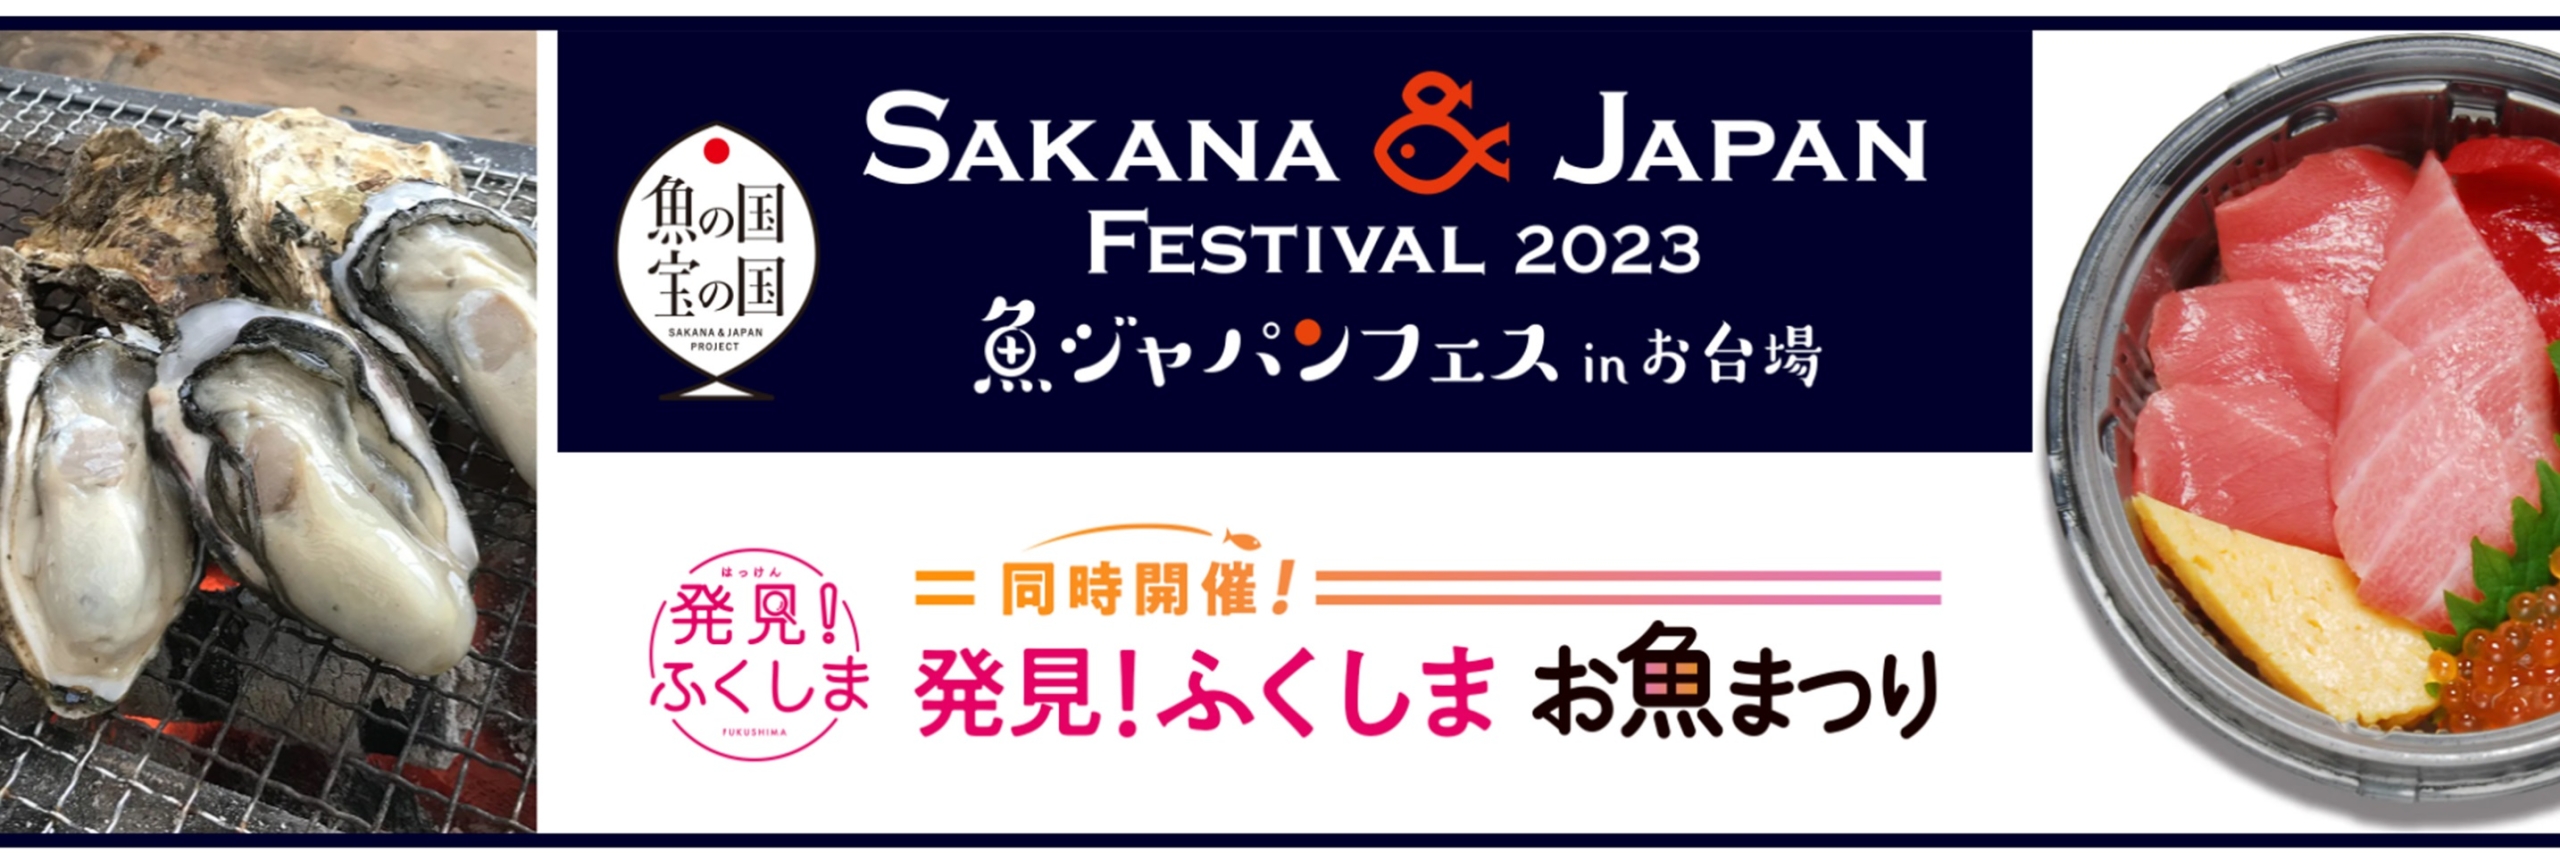 「SAKANA&JAPAN FESTIVAL2023(魚ジャパンフェス)in お台場」開催